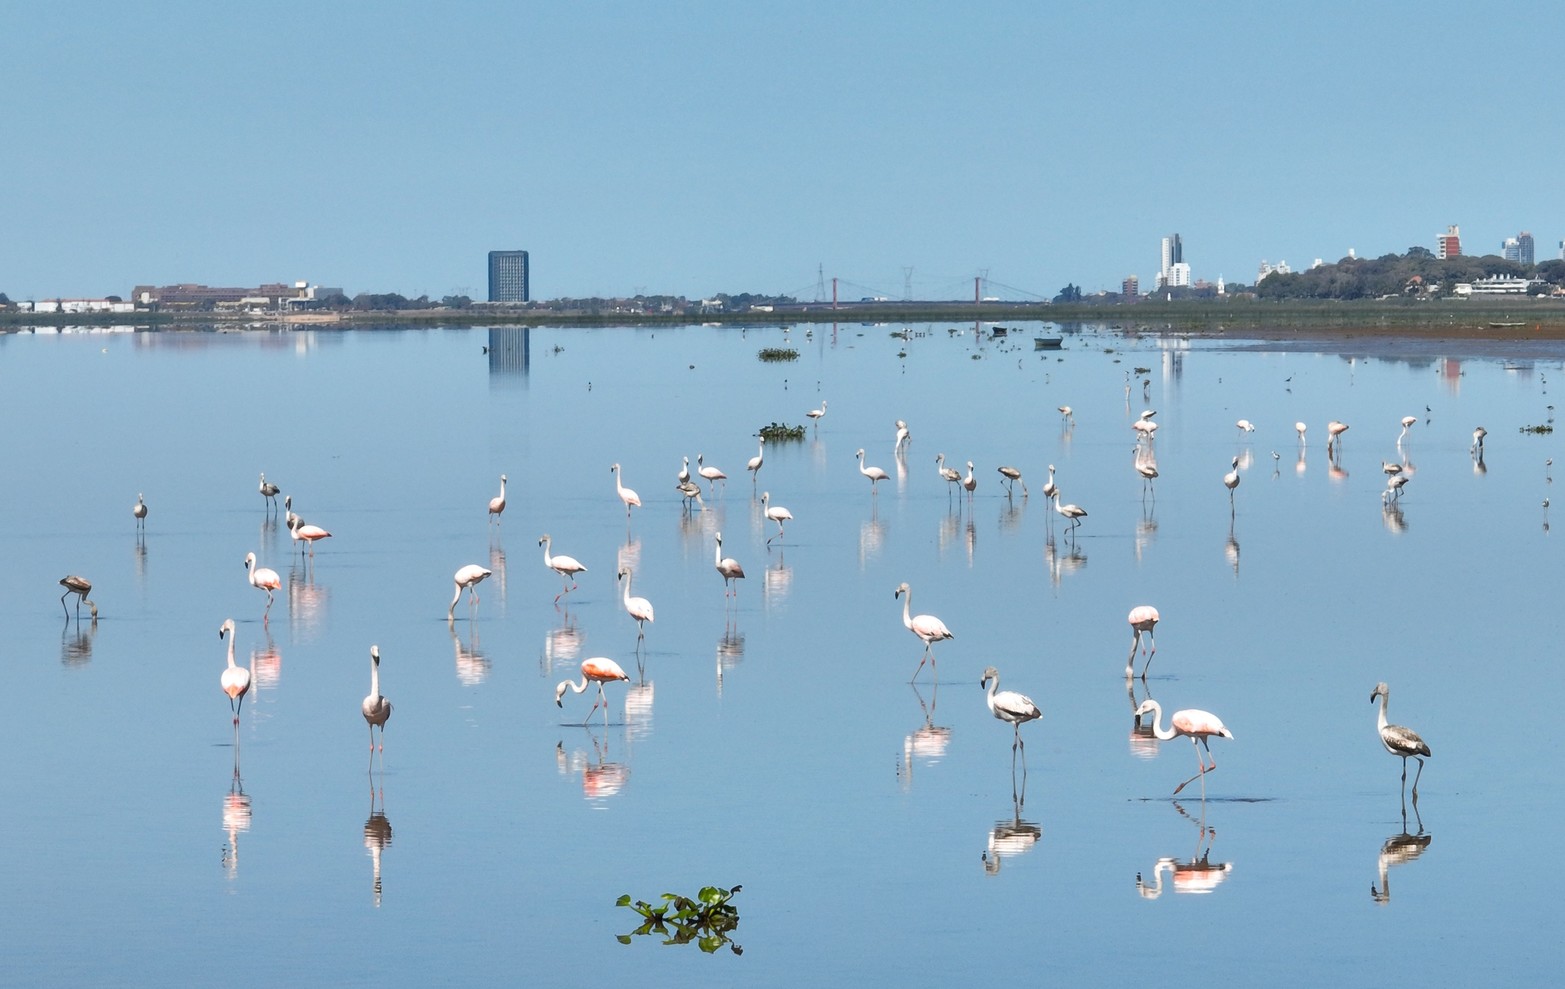 Los flamencos siguieron presentes en la laguna Setúbal. Con la pronunciada sequía y la bajante, visitaron en gran número el espejo de agua de la Setúbal en busca de alimento.